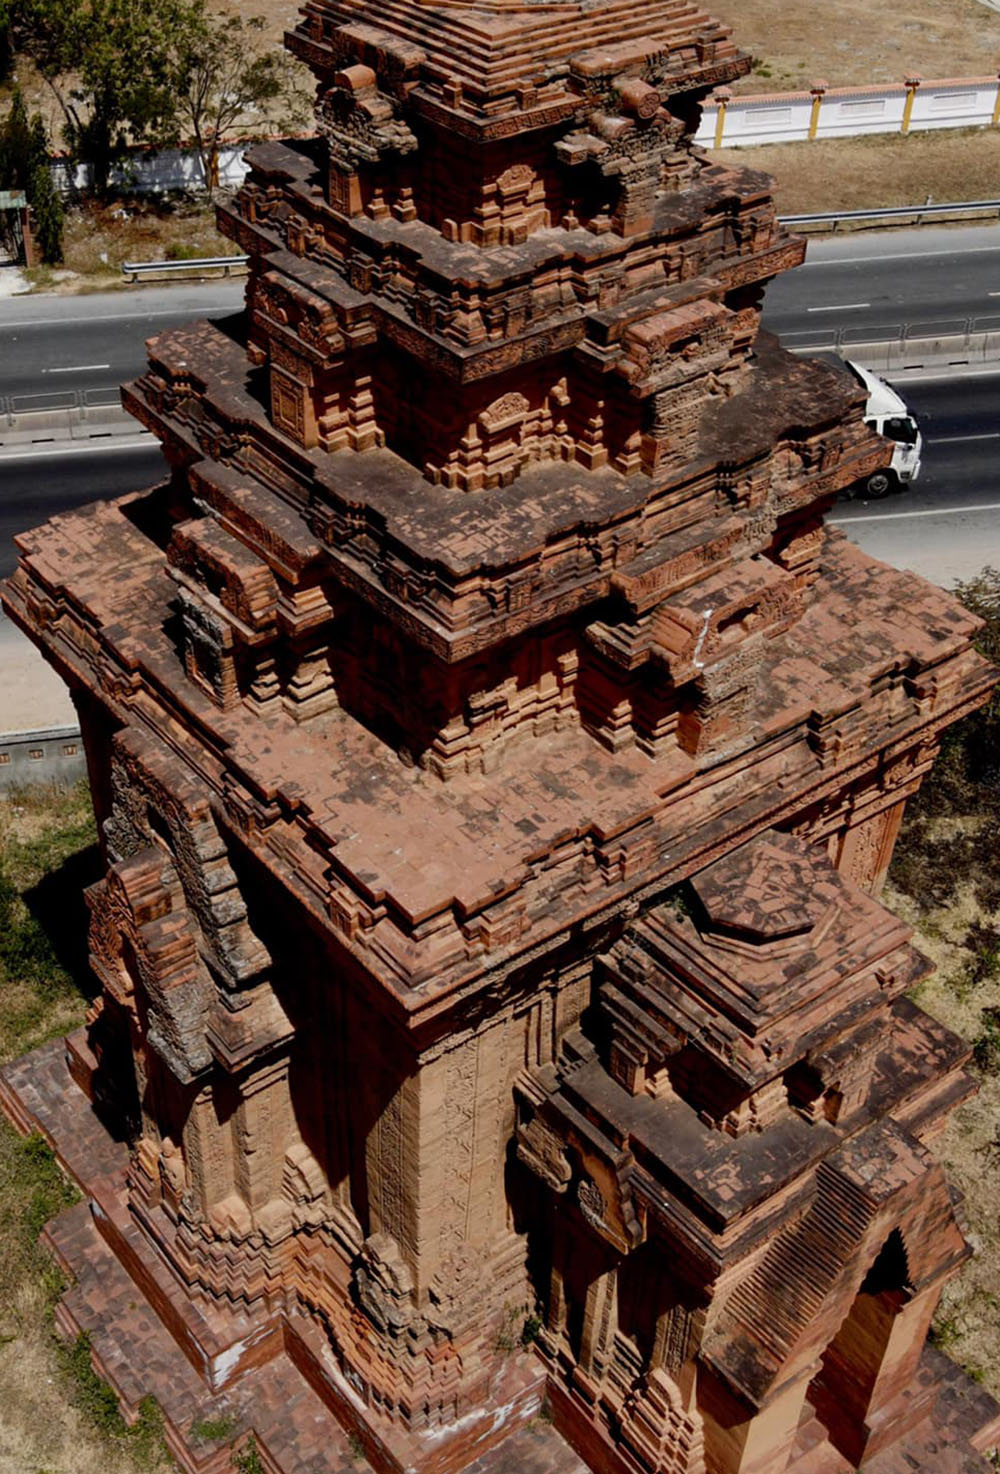 Tháp Hòa Lai trong quá khứ đã từng có 3 ngôi tháp và một ngọn đã bị sụp đổ